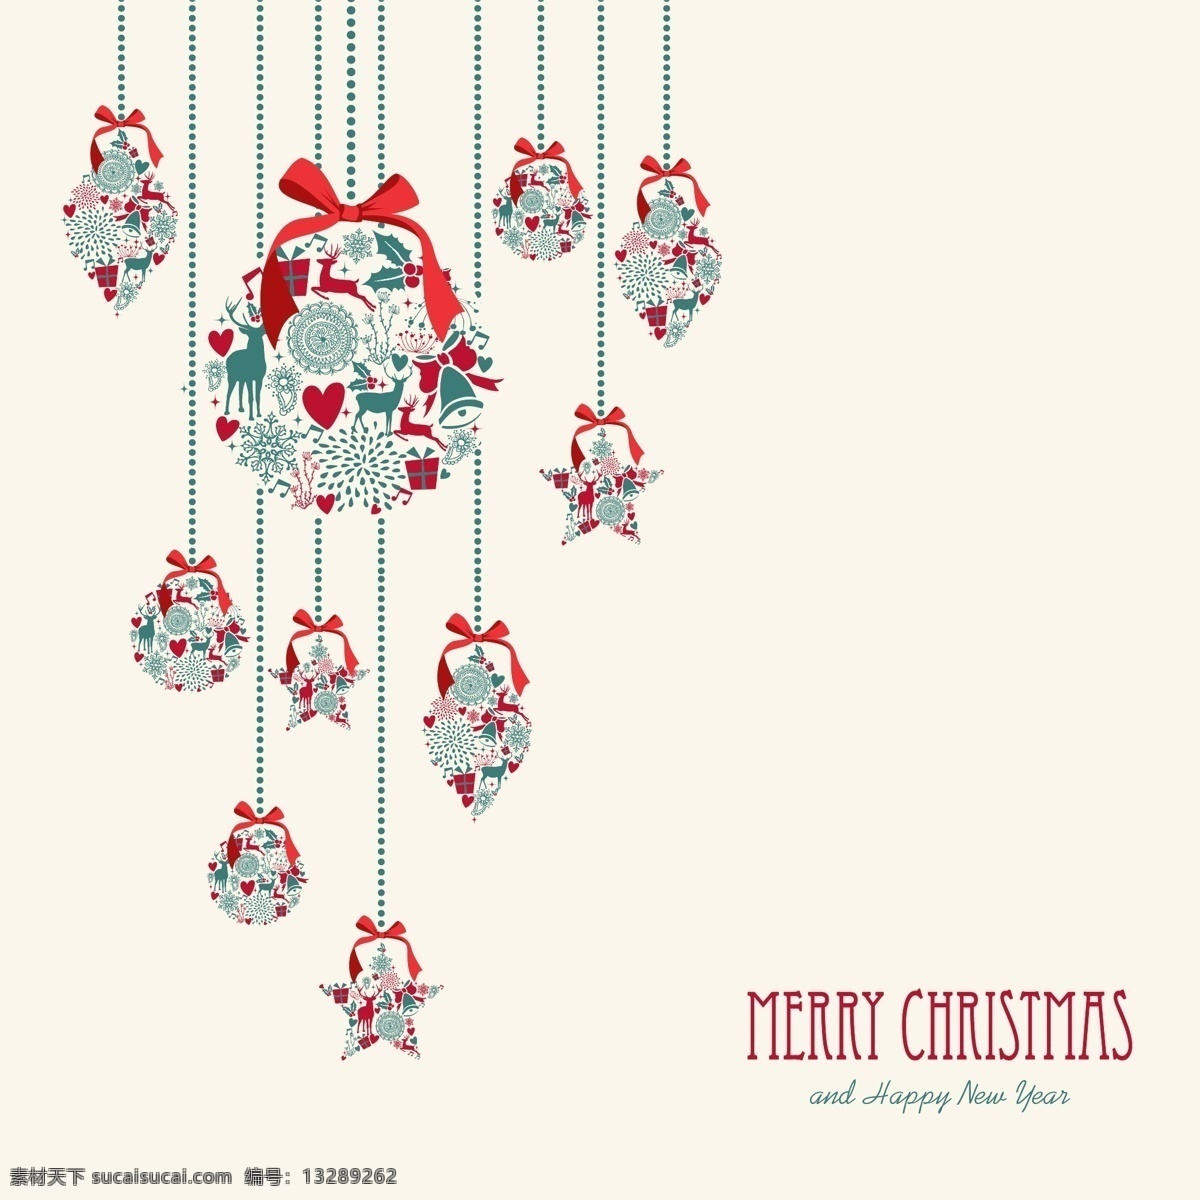 复古 圣诞 吊球 海报 矢量 蝴蝶结 圣诞节 圣诞吊球 麋鹿 雪花 装饰 背景 插画 槲寄生 五角星 白色